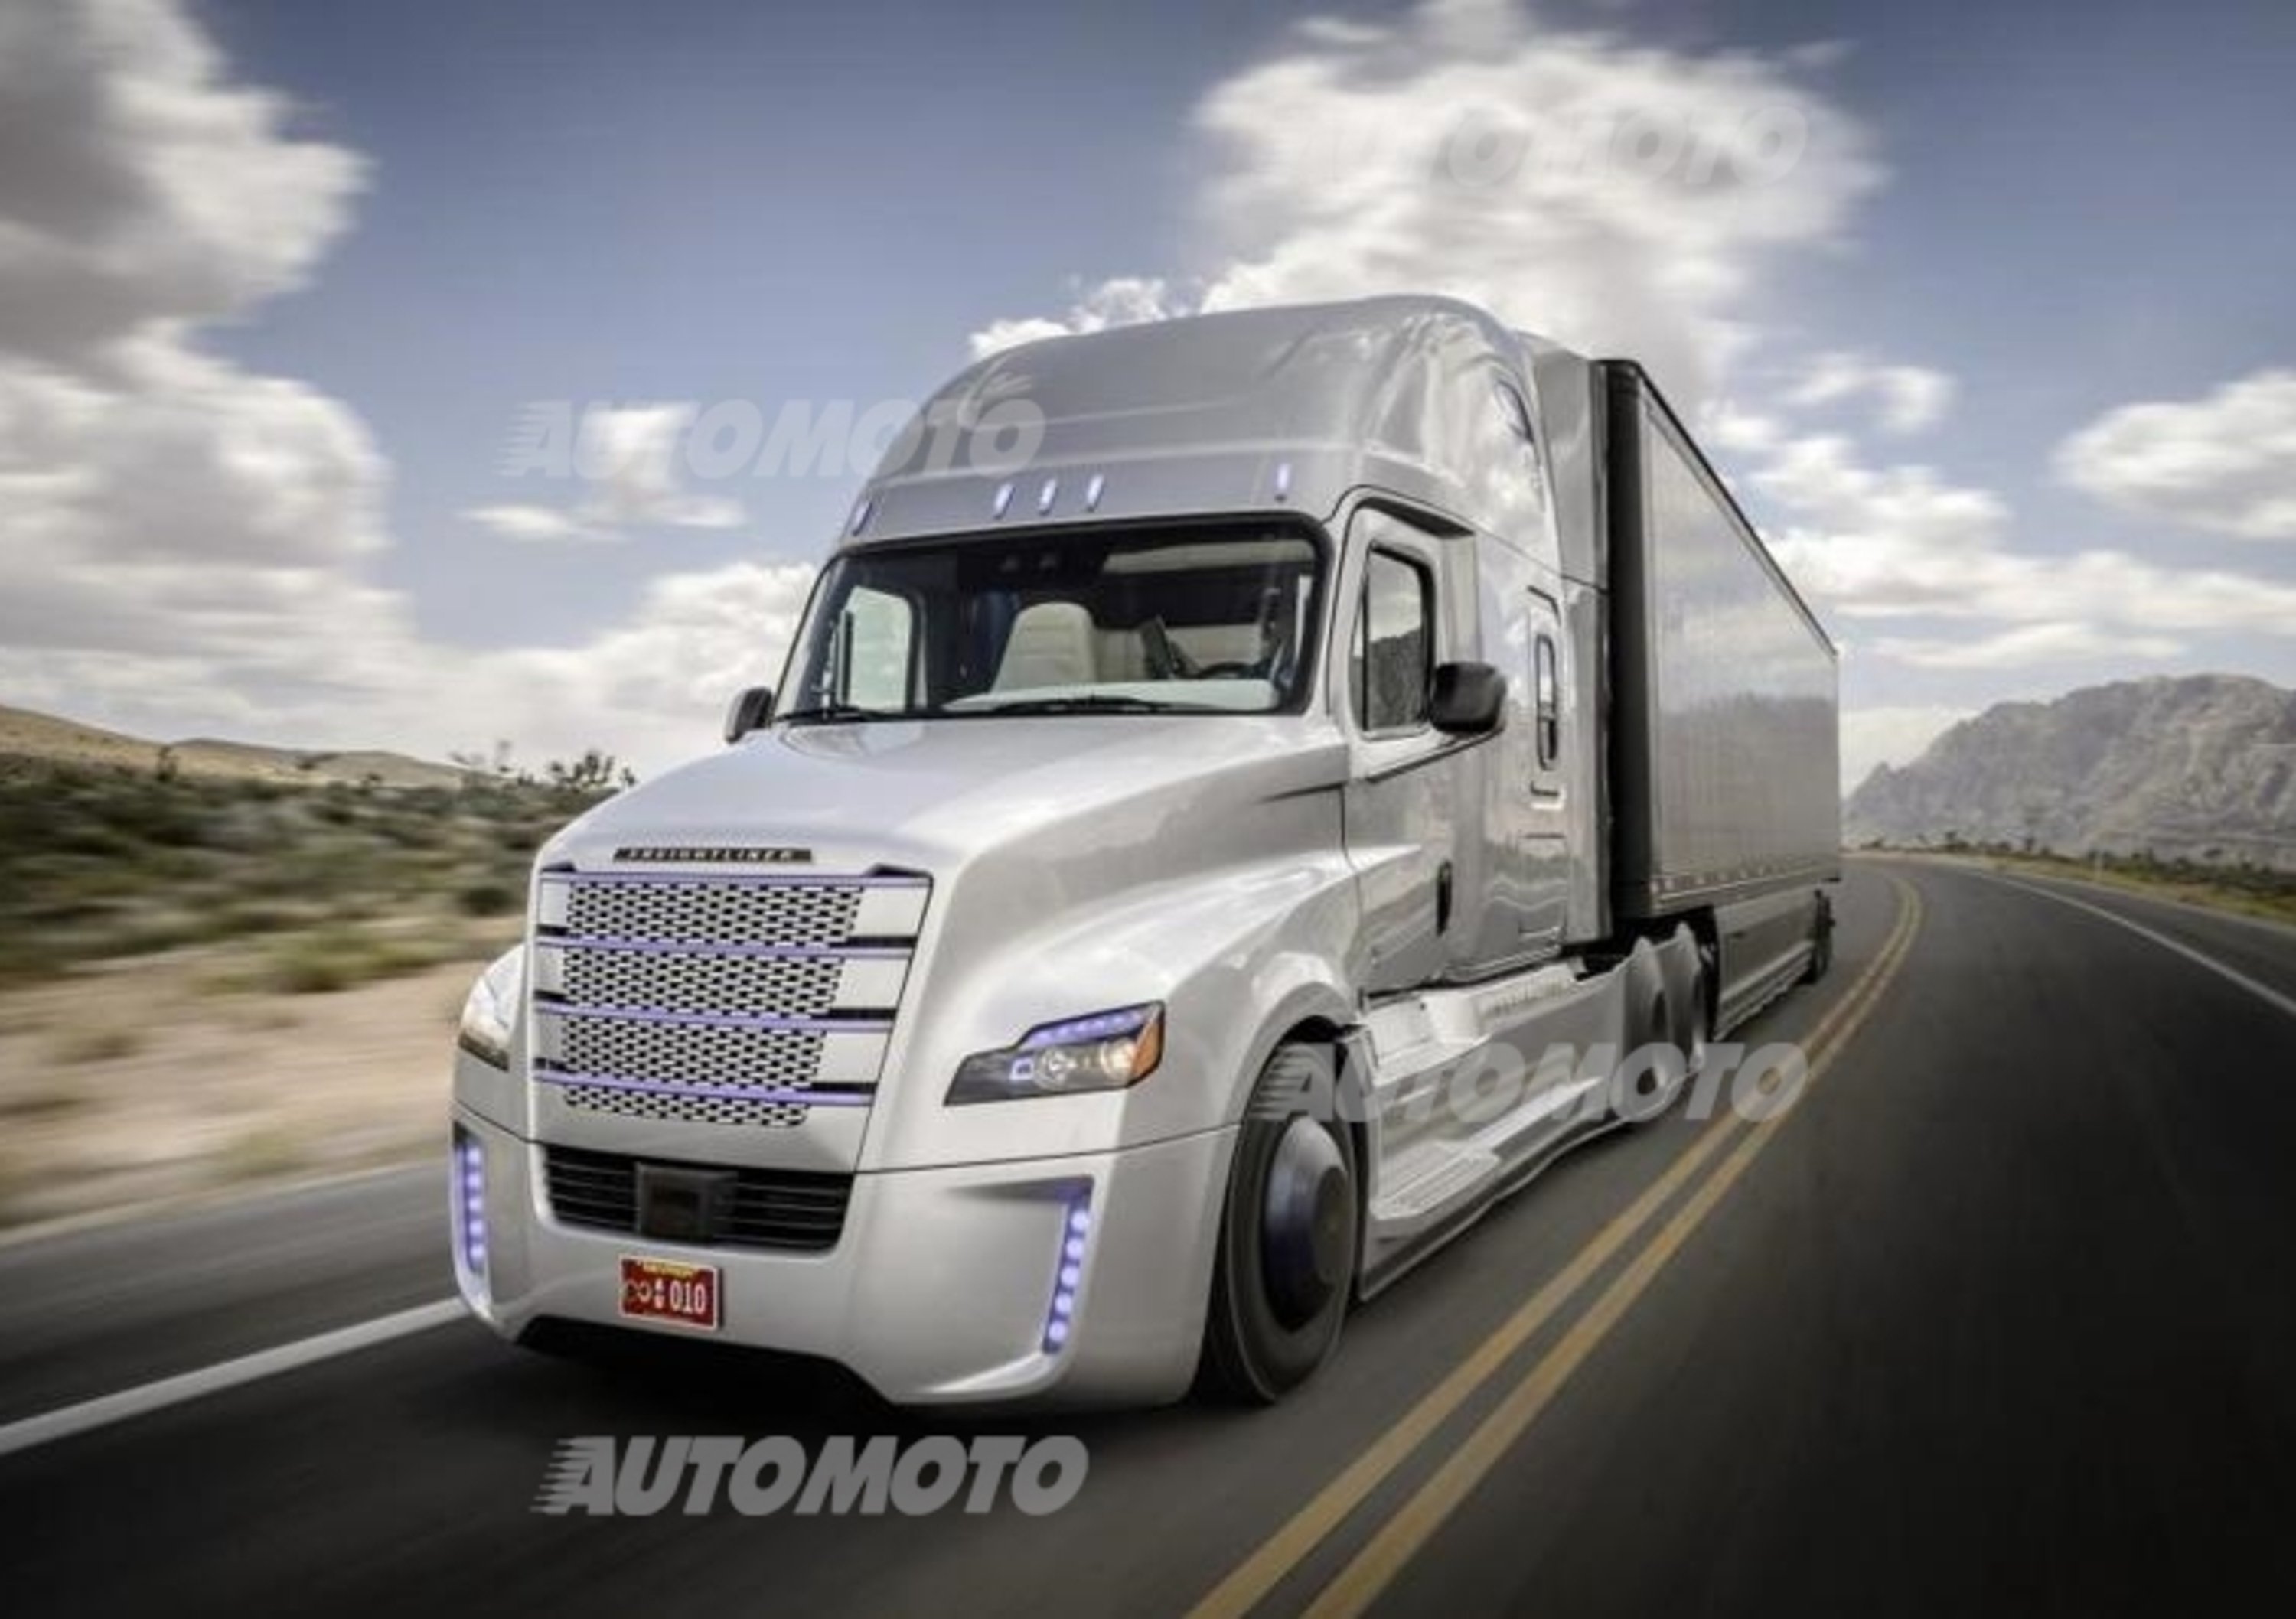 Freightliner Inspiration Truck, il primo &ldquo;truck&rdquo; a guida autonoma